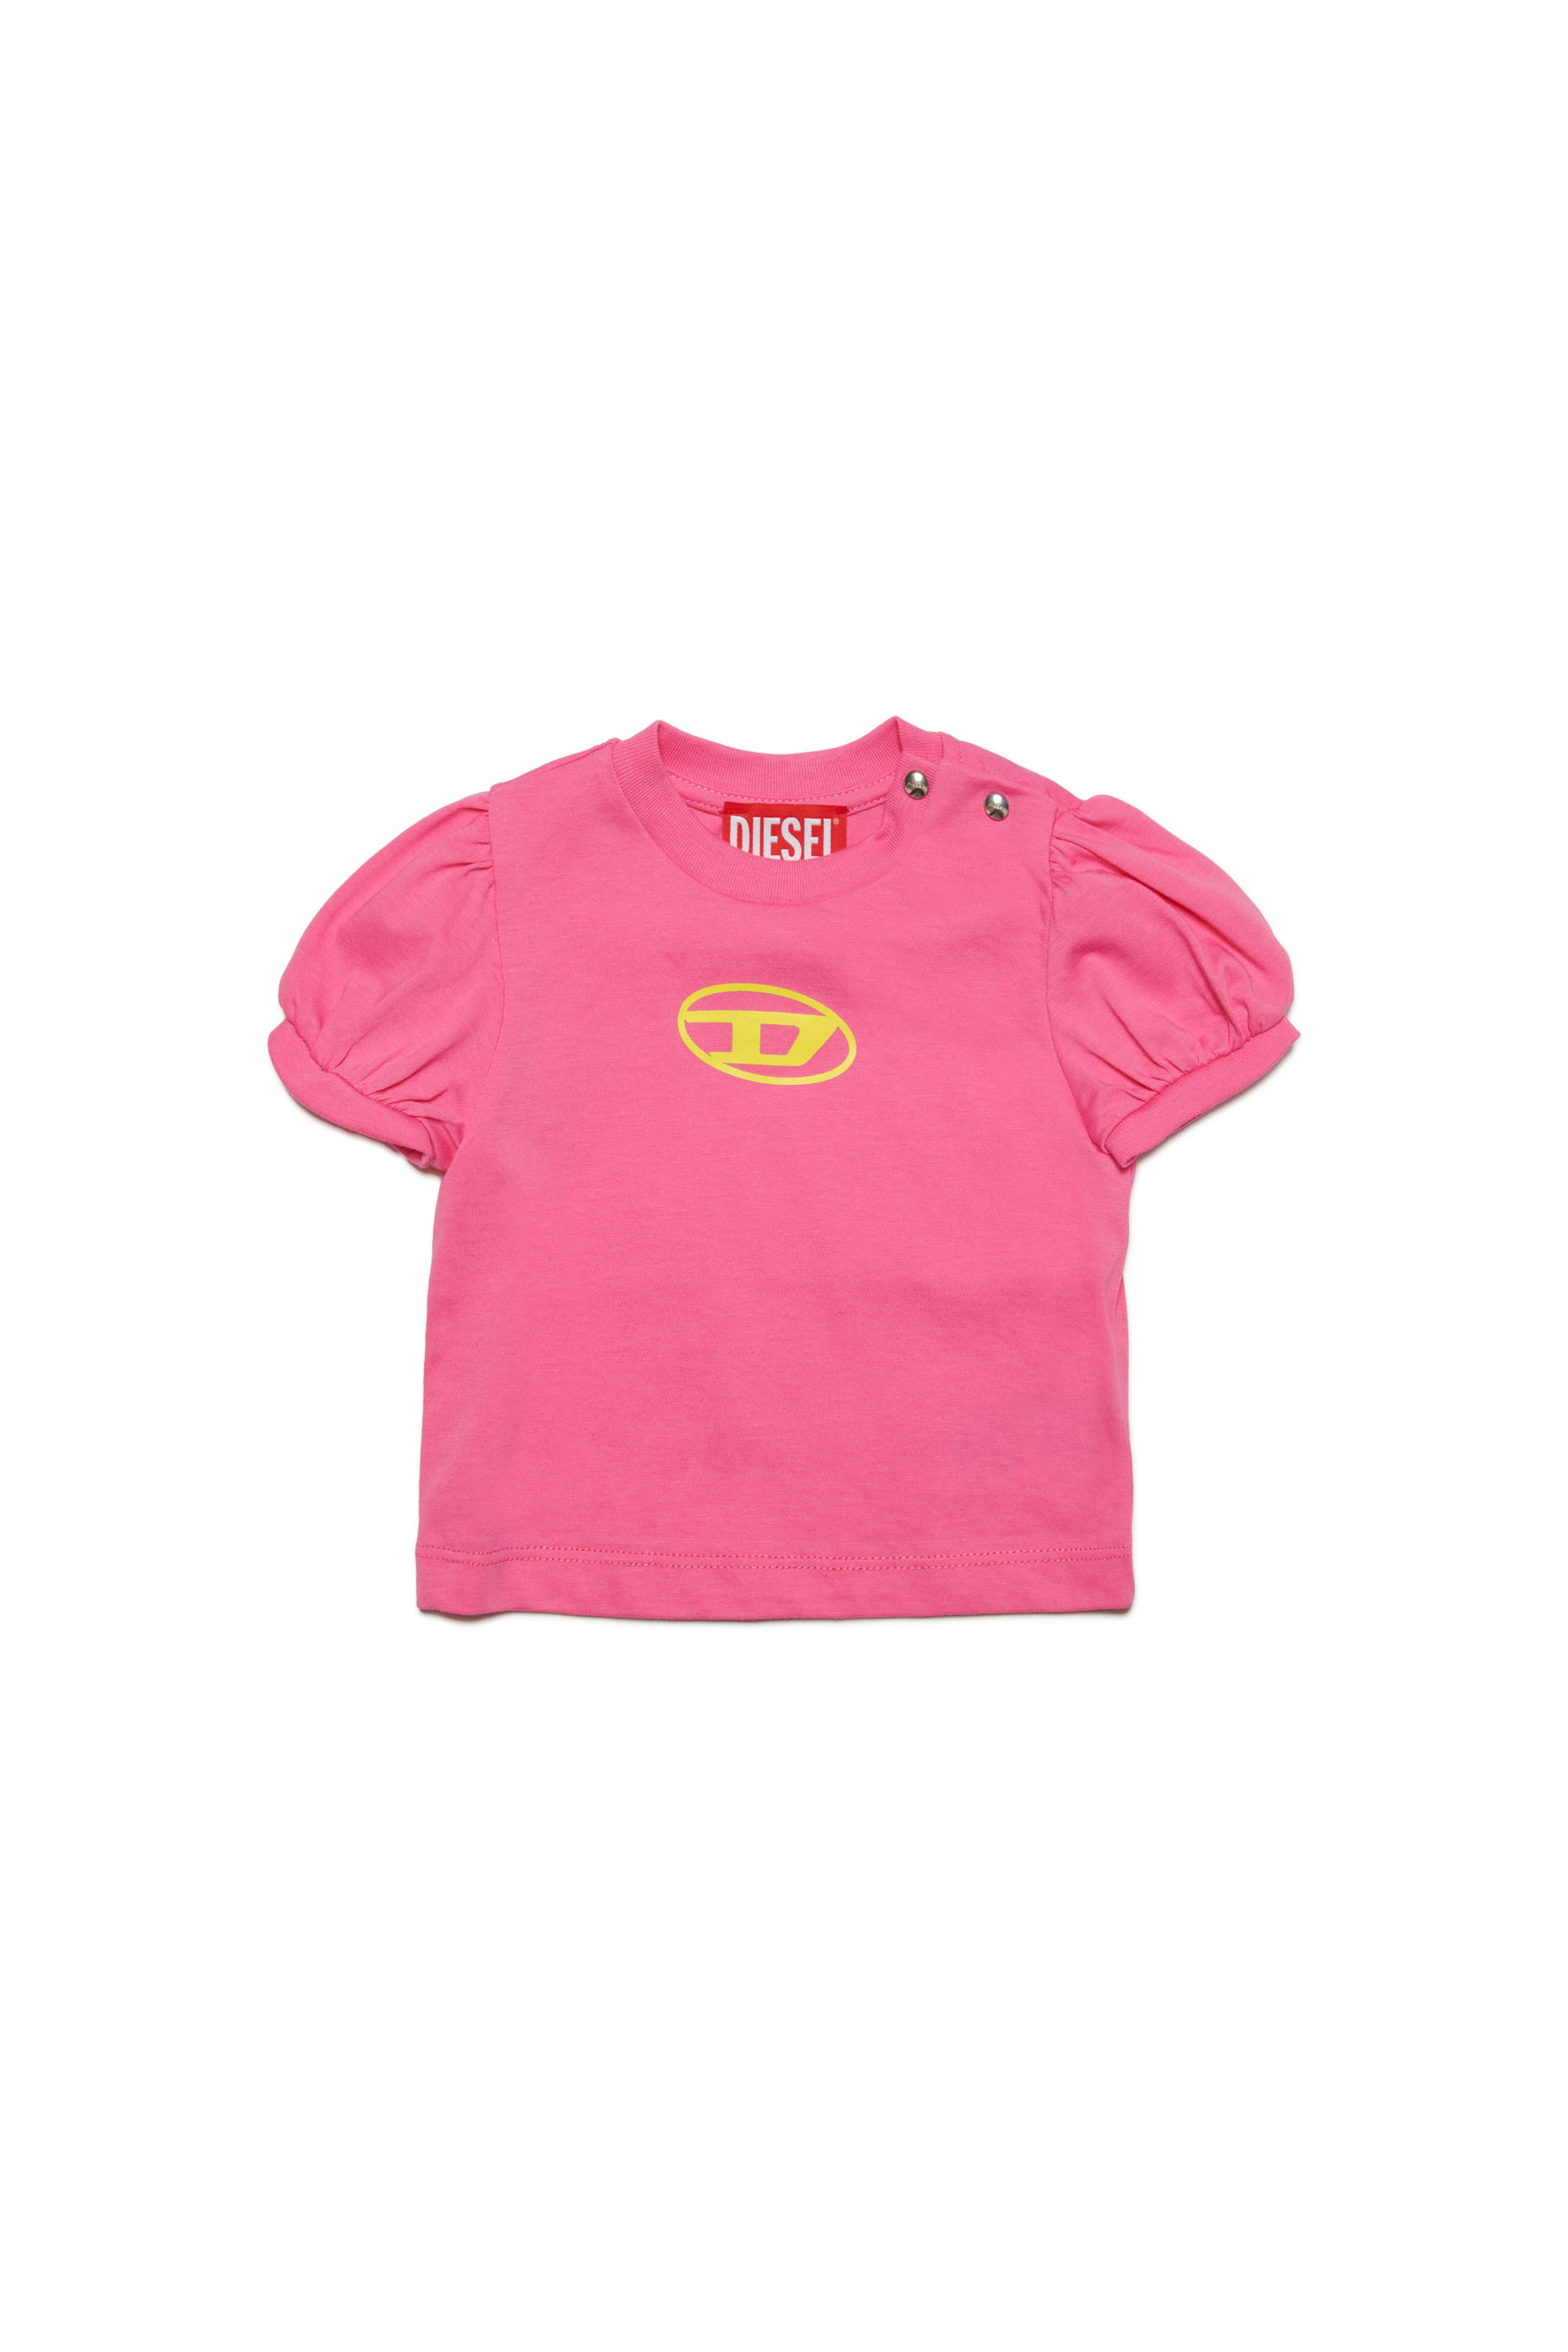 Diesel - T-Shirt mit Puffärmeln und Oval D - T-Shirts und Tops - Damen - Rosa